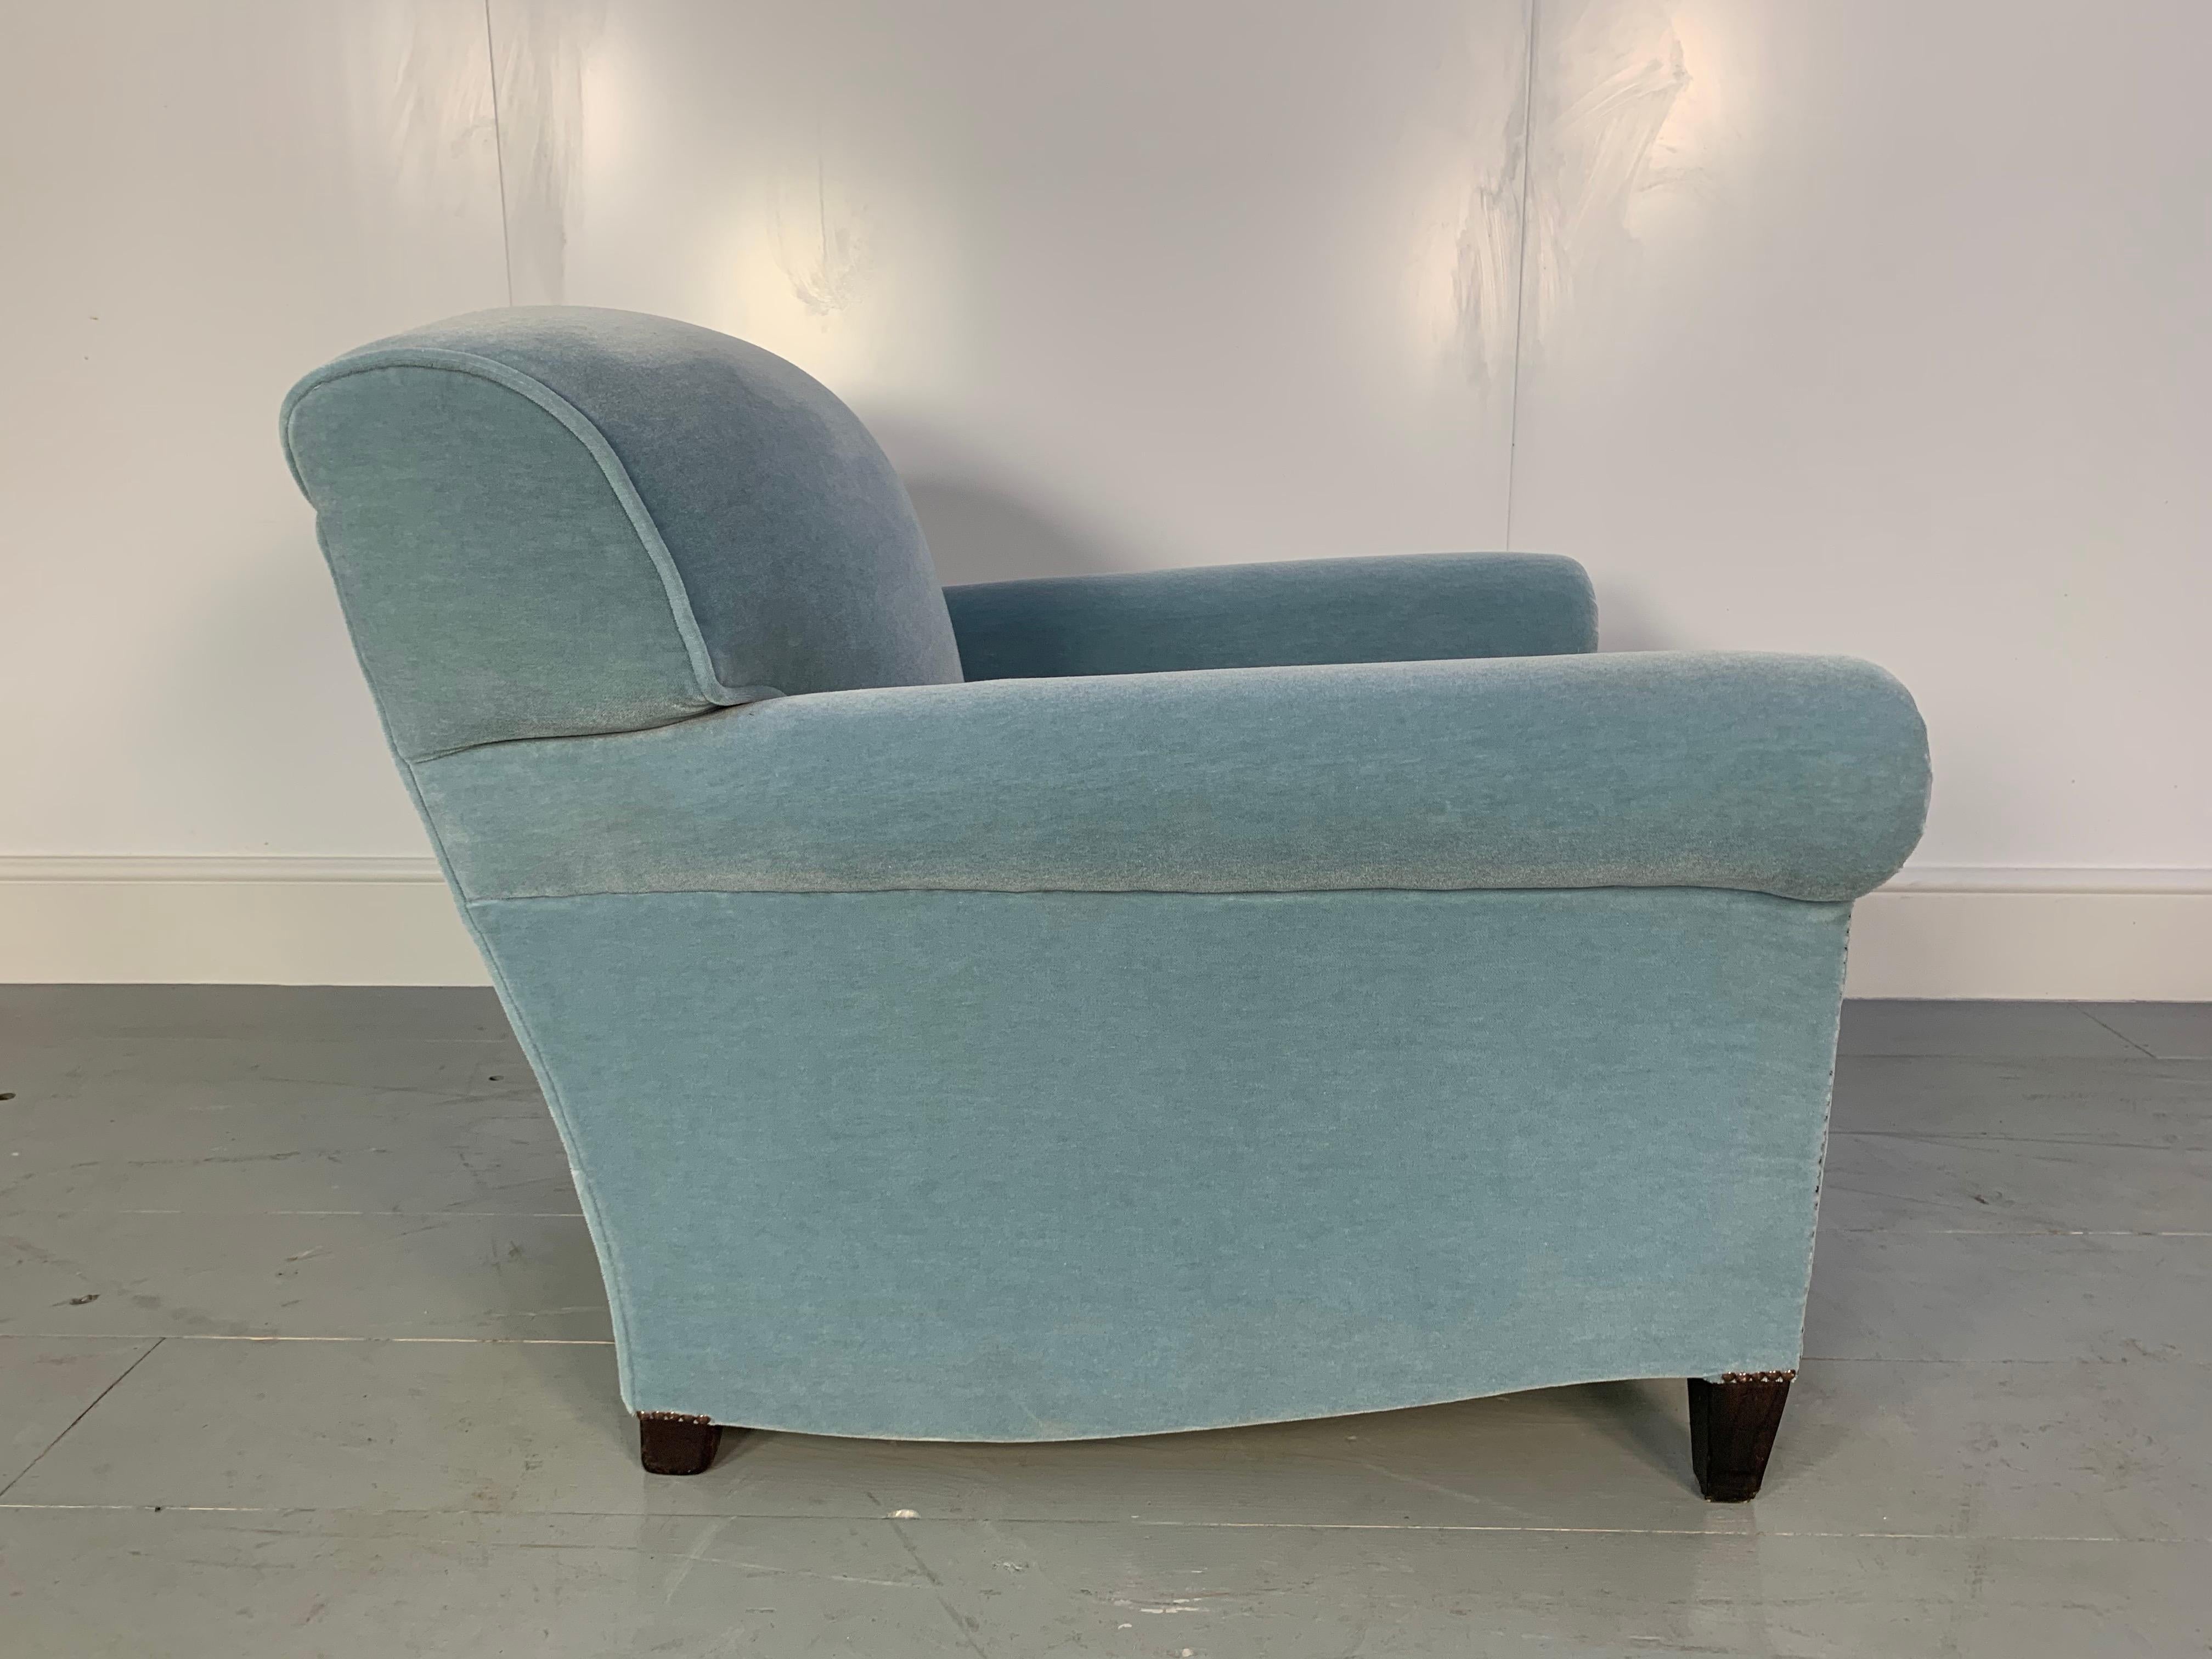 pale blue armchair